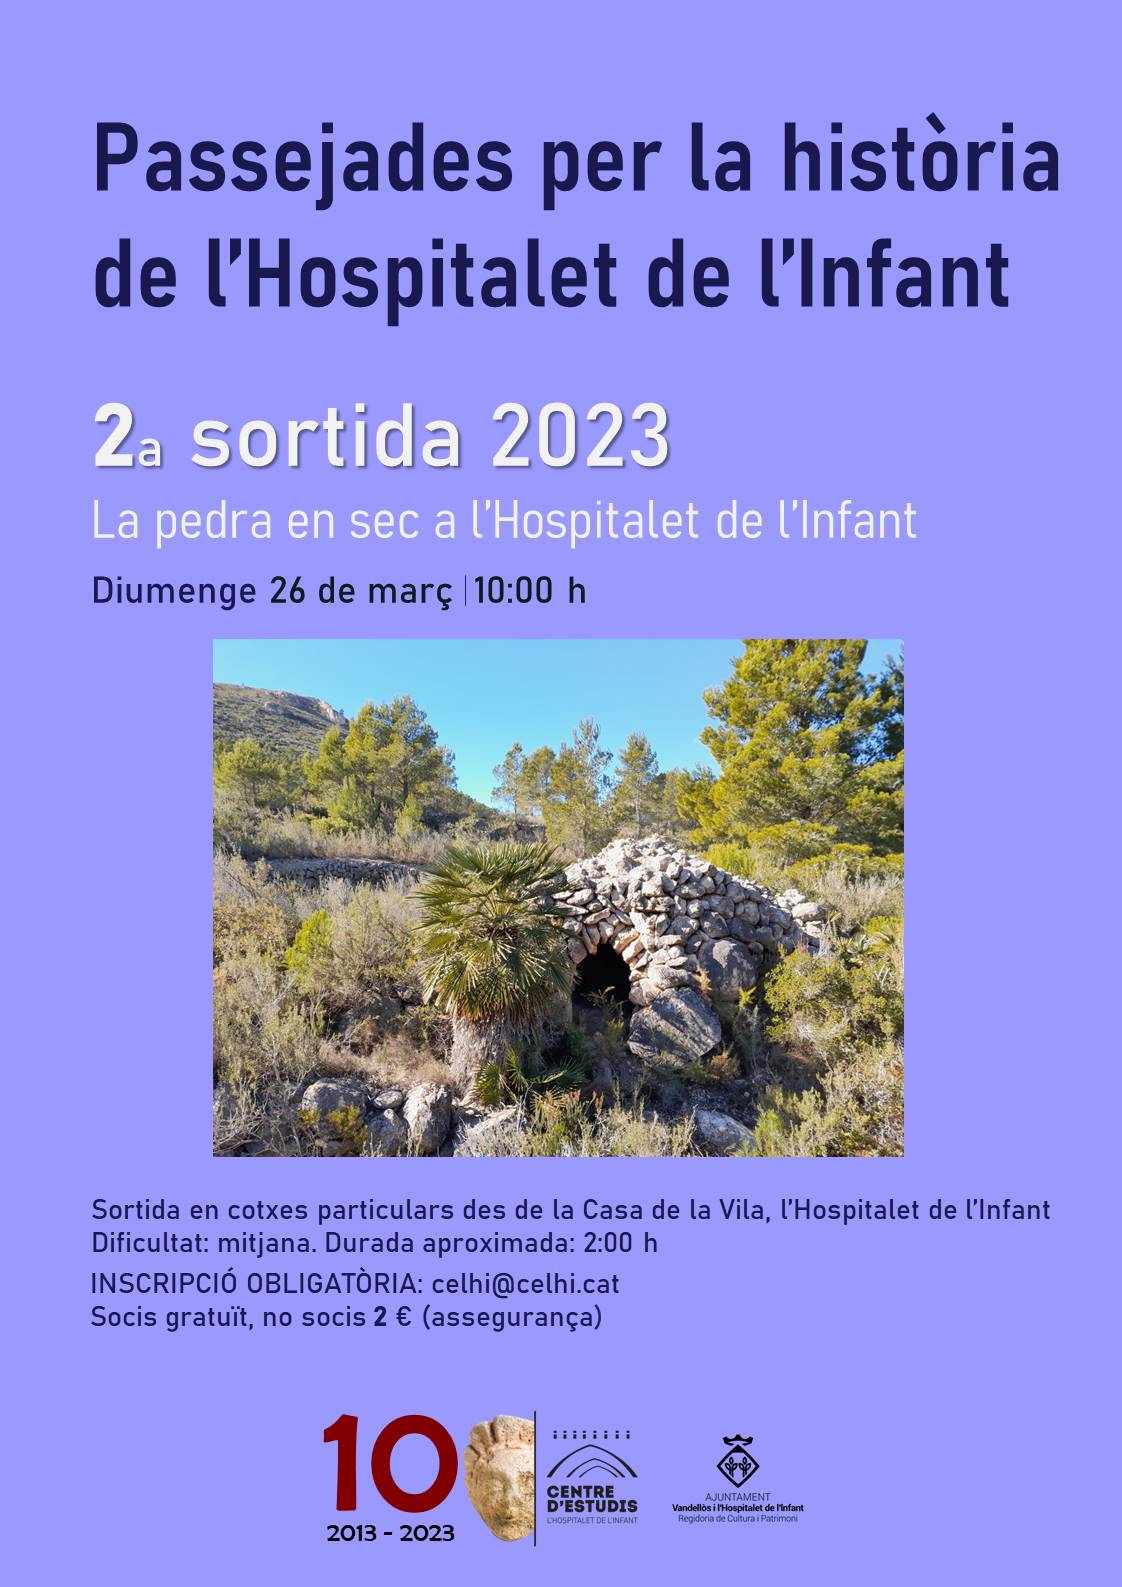 Passejades per la història de l'Hospitalet de l'Infant / 26/03/2023, a les 10 h, a l'Hospitalet de l'Infant